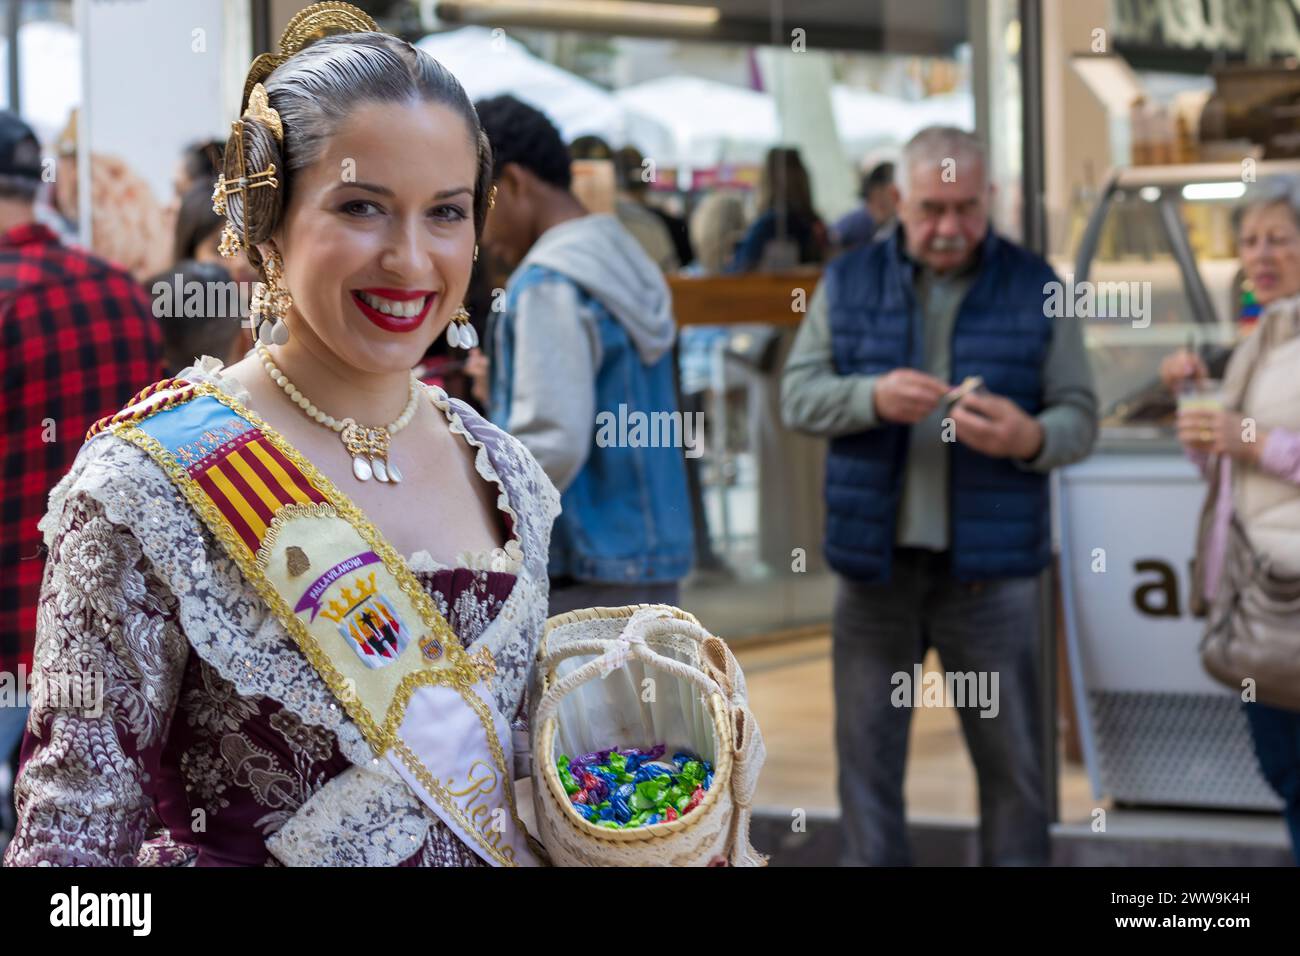 Das Fallas Festival in Gandia Spanien zeigt lebendige Kultur. Frau in traditioneller Kleidung mit einem Blumenkorb verkörpert den festlichen Geist. Stockfoto